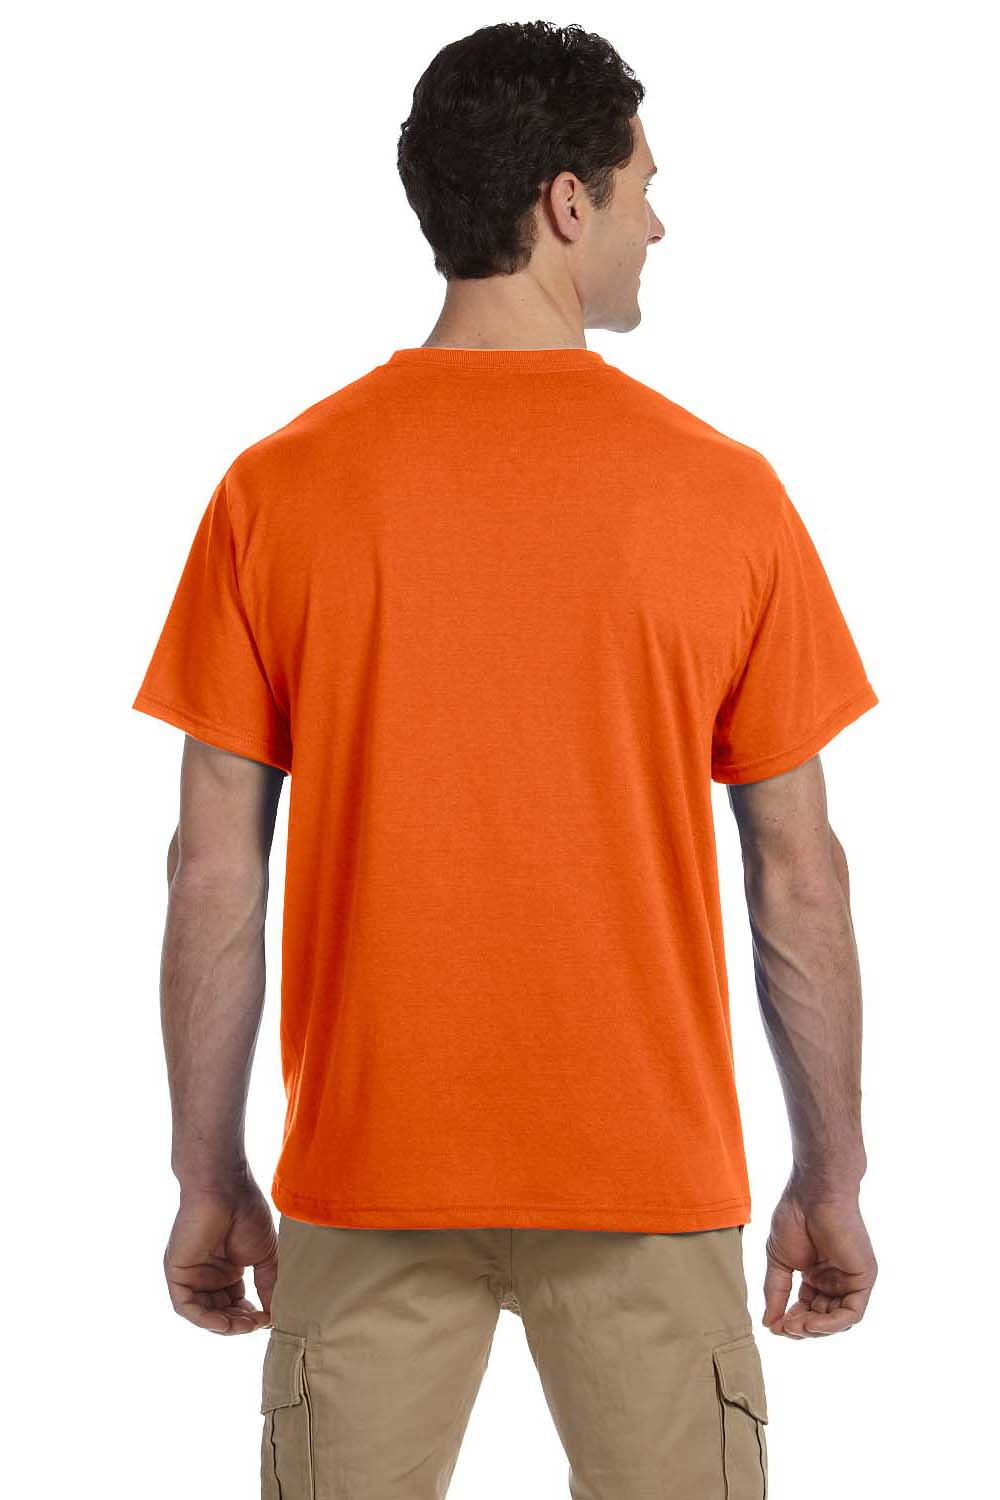 Safety Orange pocket t shirt Short Sleeve